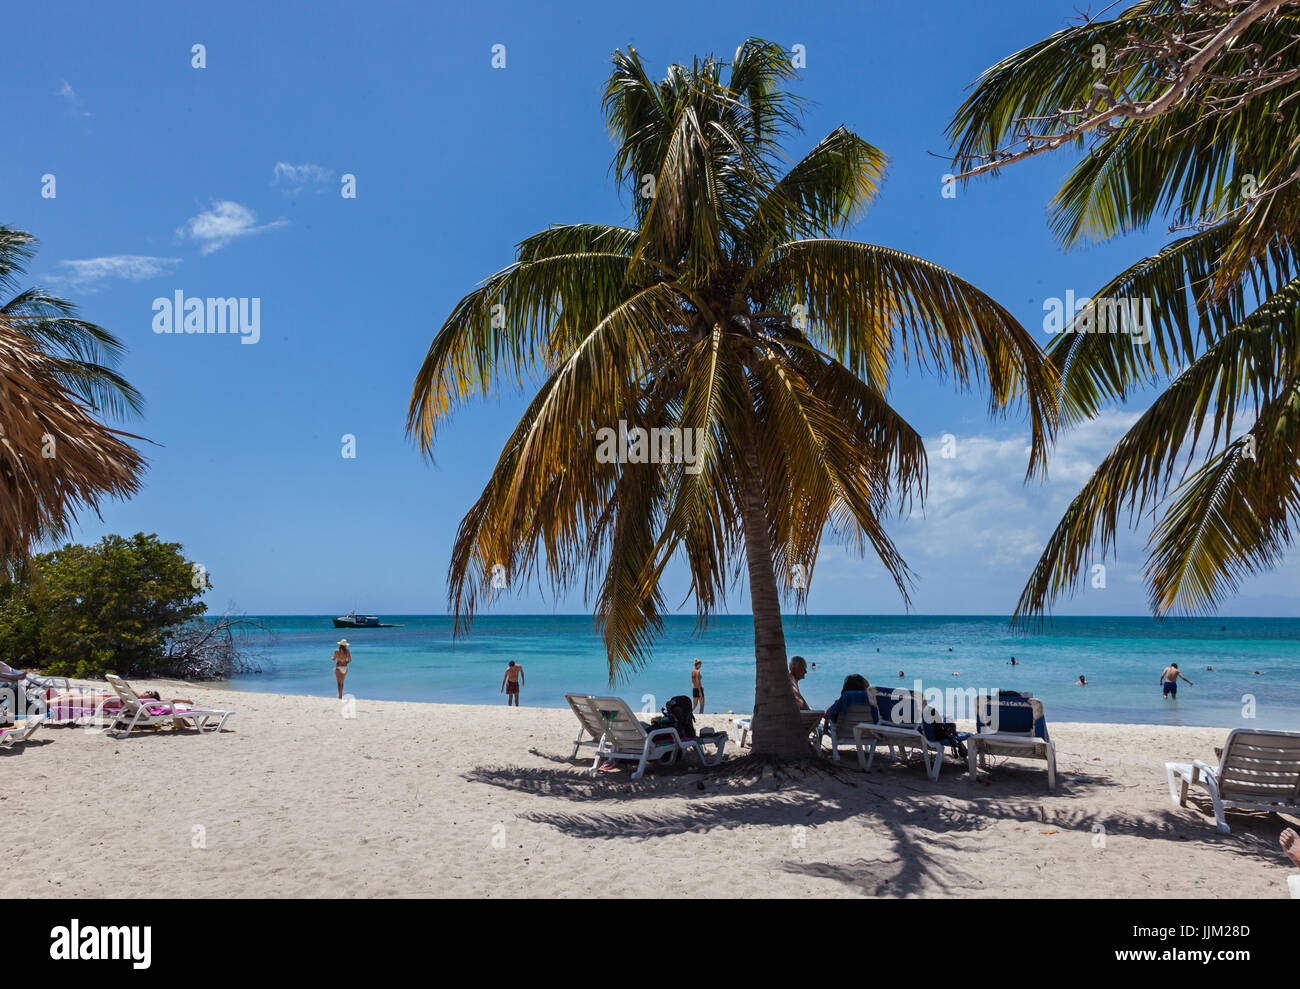 L'île tropicale de Cayo Iguana accessibles par bateau depuis Playa Ancon est une destination touristique - Trinidad, Cuba Banque D'Images